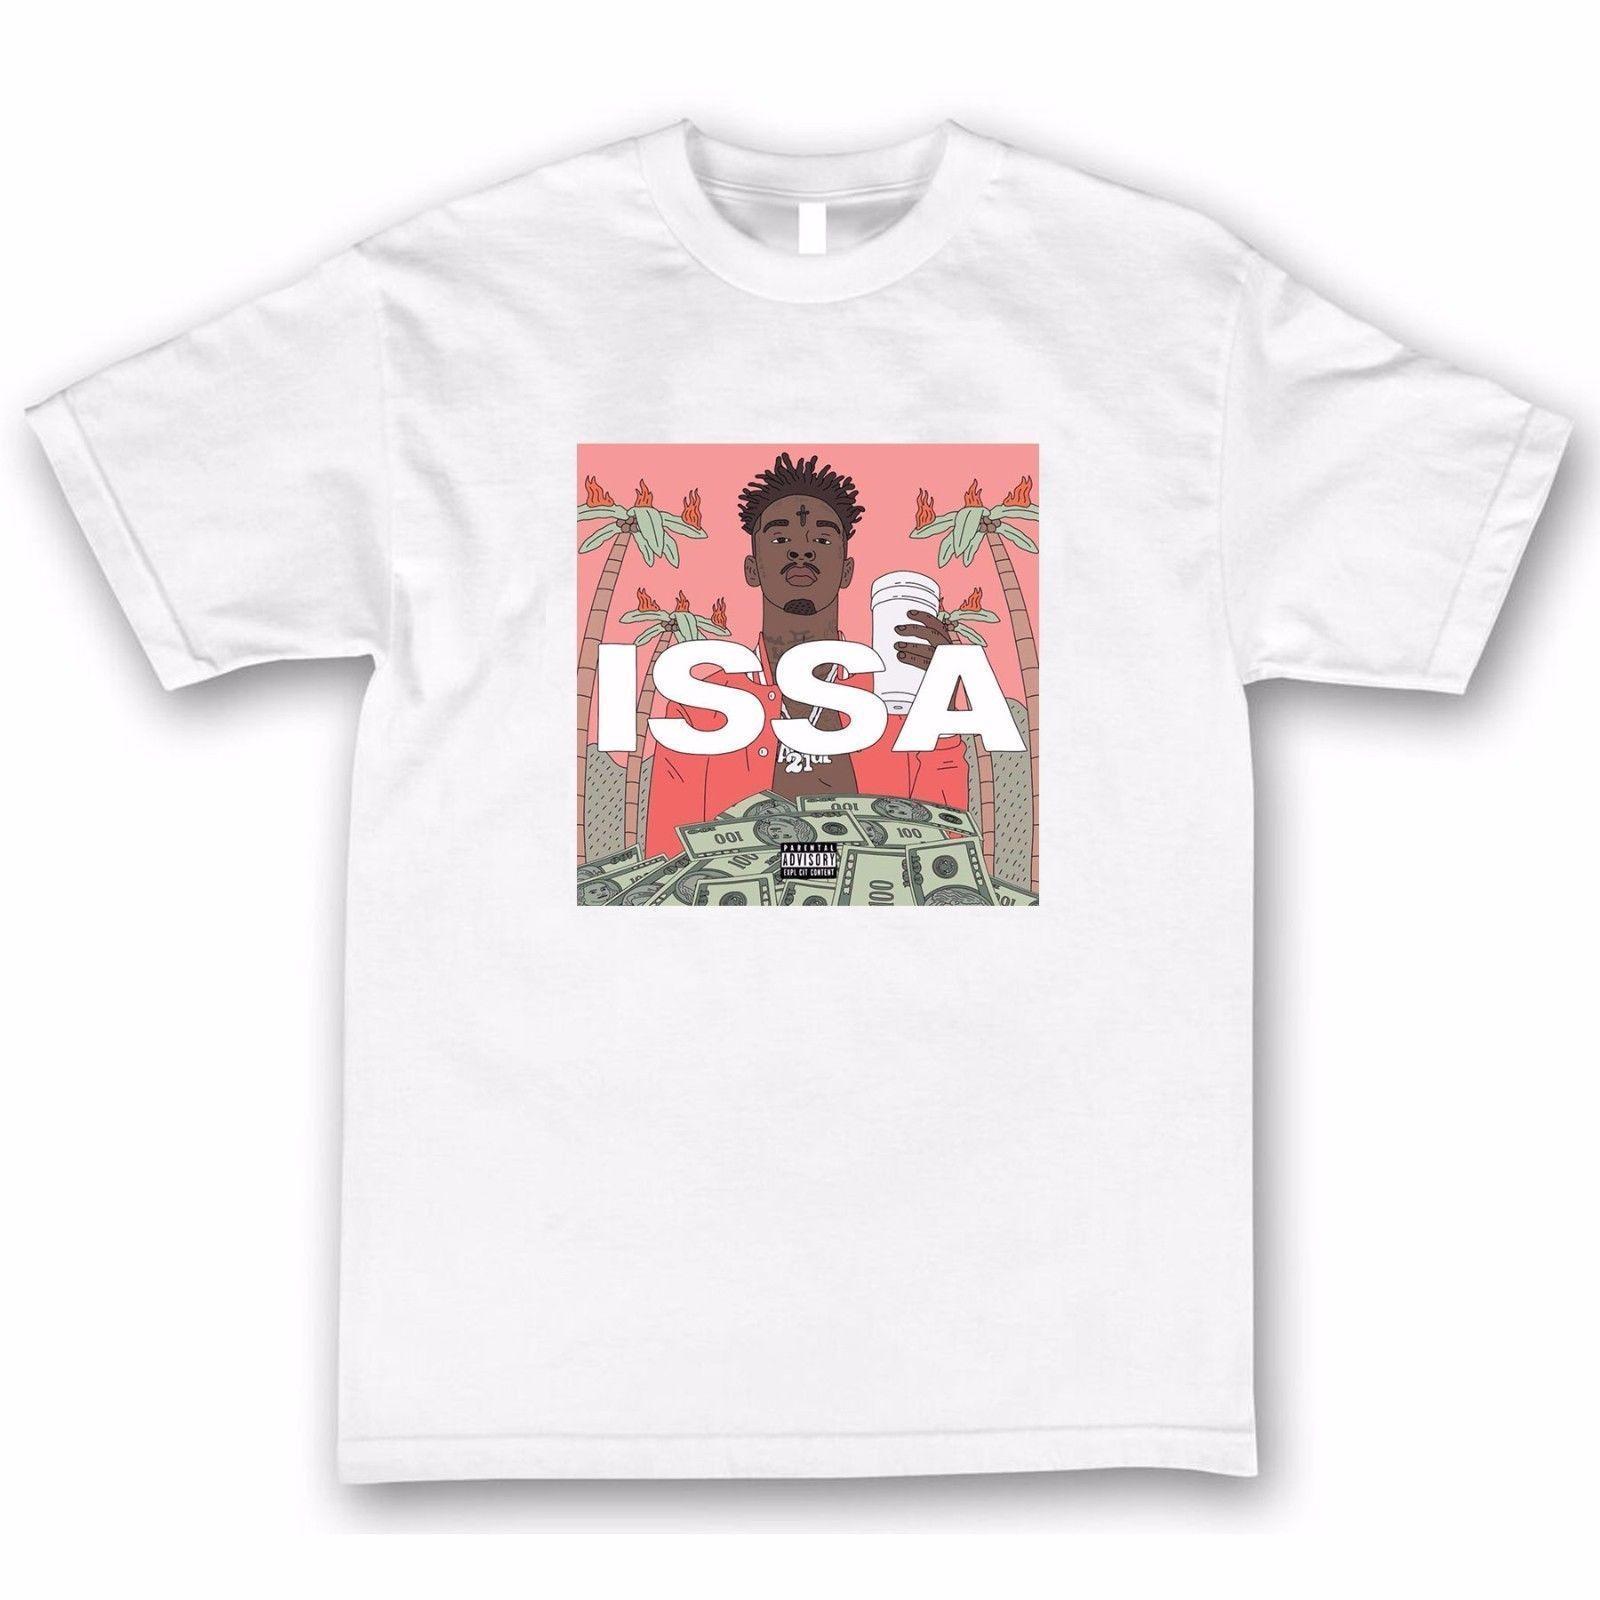 Issa 21 Savage Logo - Savage Issa Album T Shirt Online With $12.99 Piece